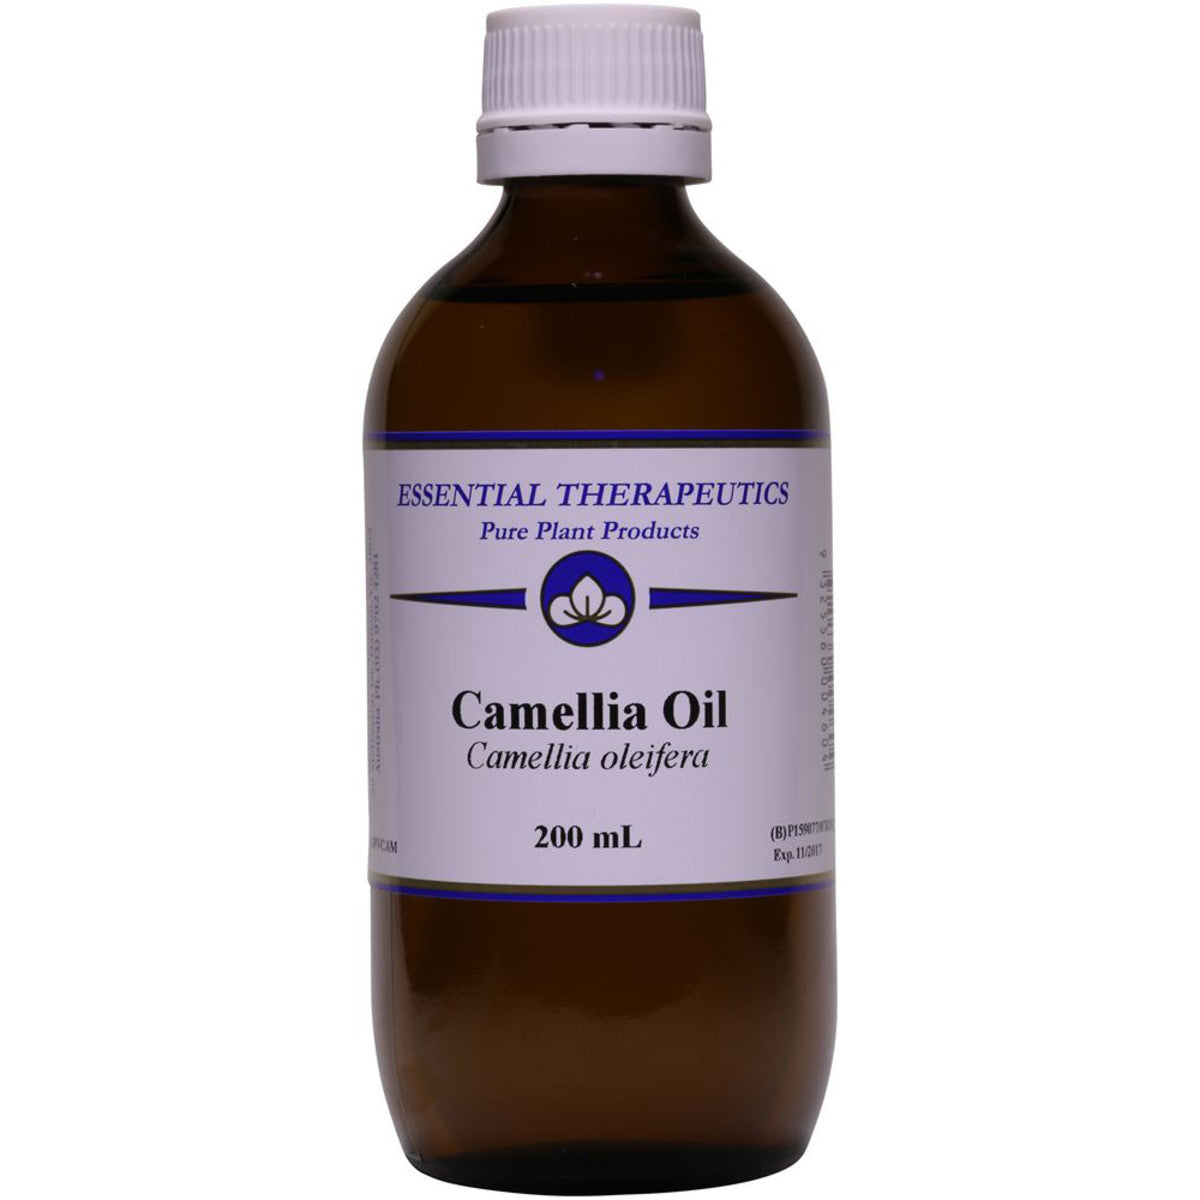 Essential Therapeutic - Camellia Oil 200ml